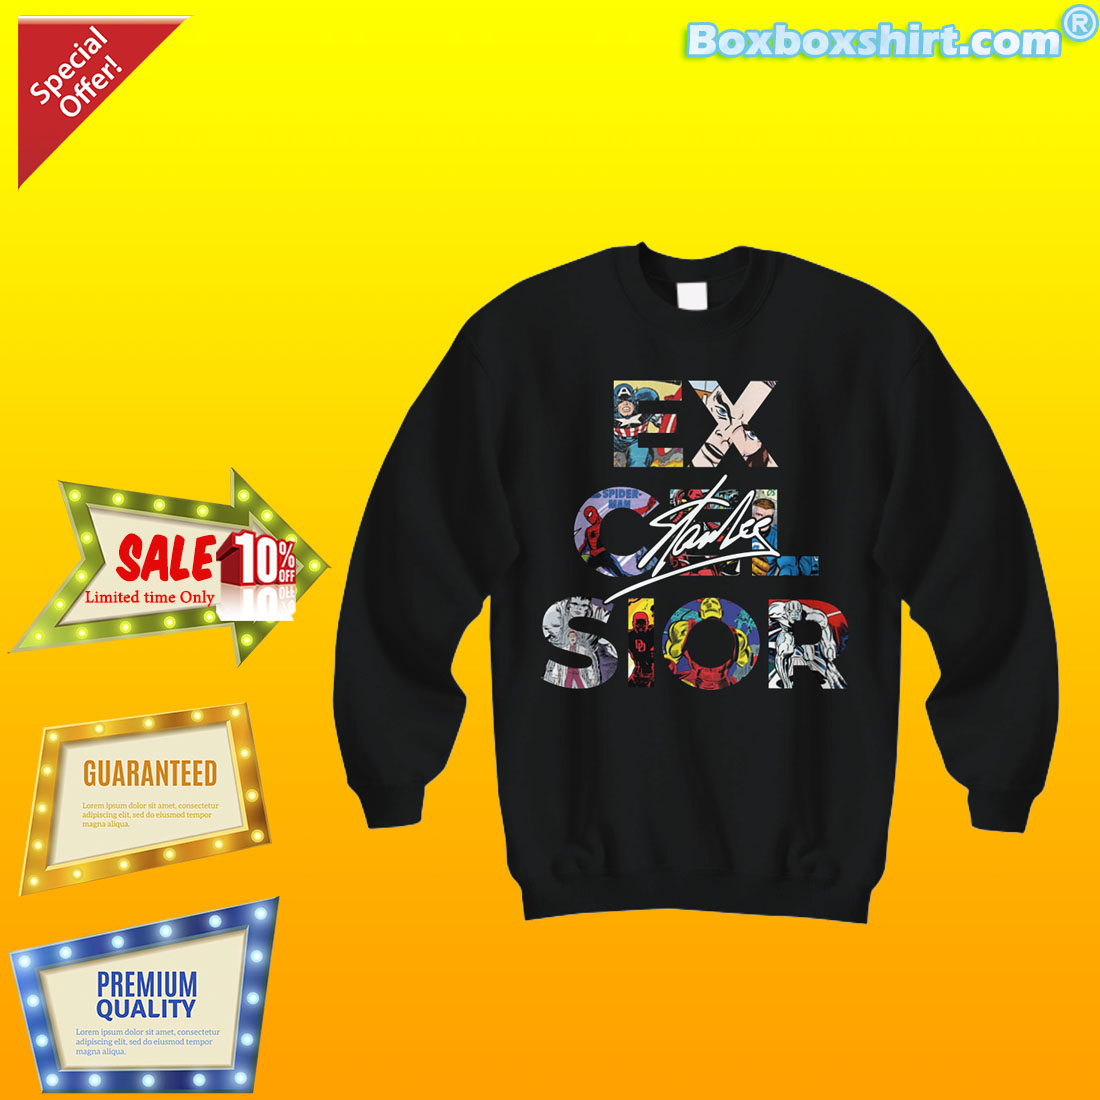 Excelsior Stan Lee shirt